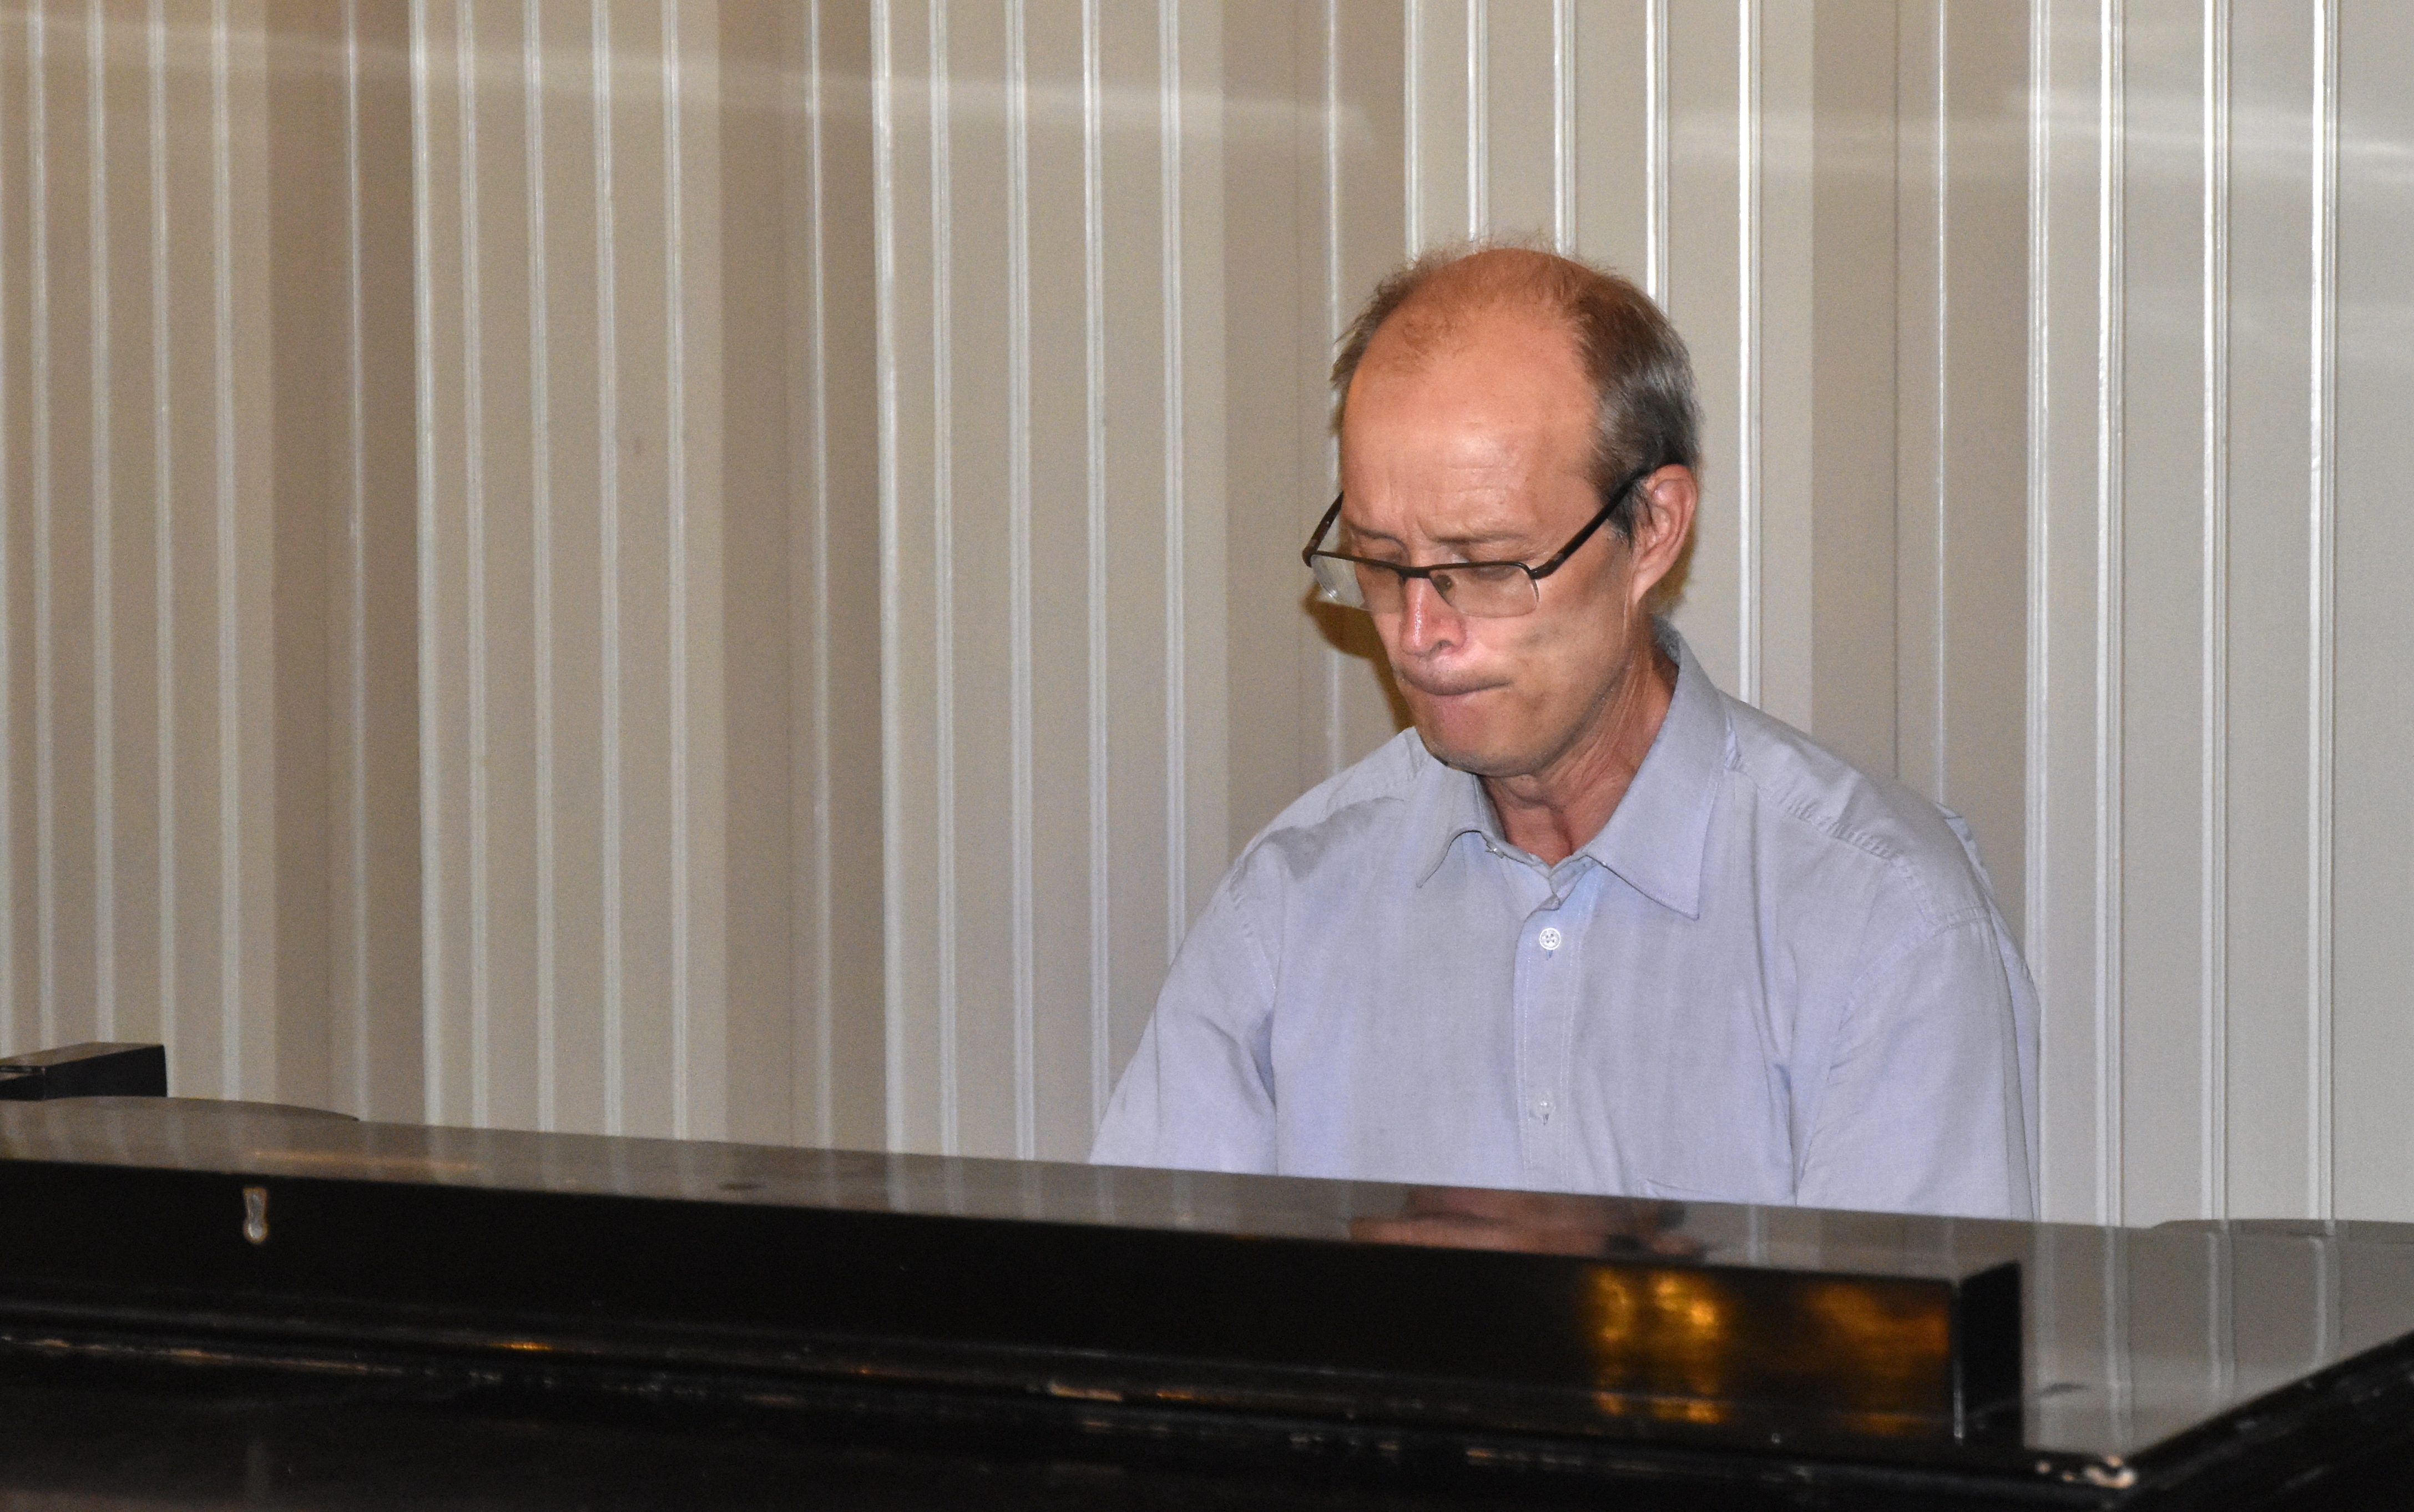 DSC_1842-Bengt-plays-piano.jpg - Bengt playing ...